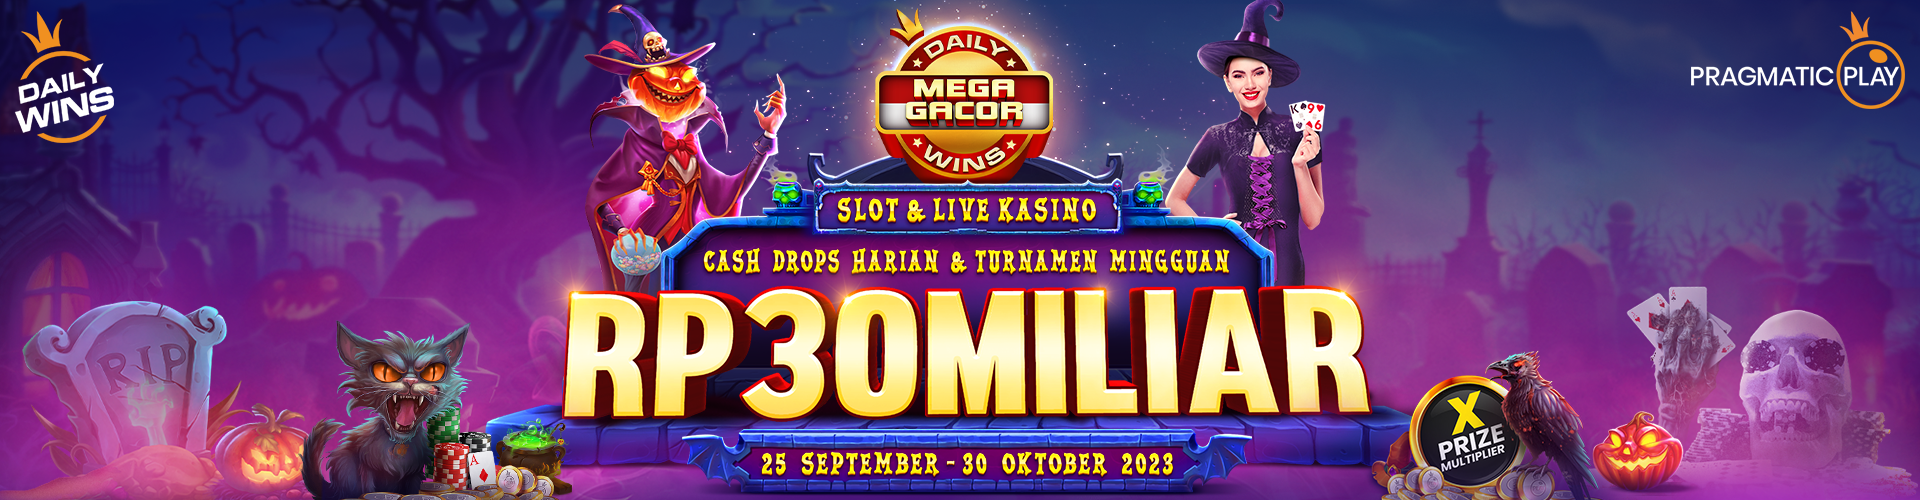 Daily Wins Slot & Live Casino - 25 September - 30 Oktober 2023